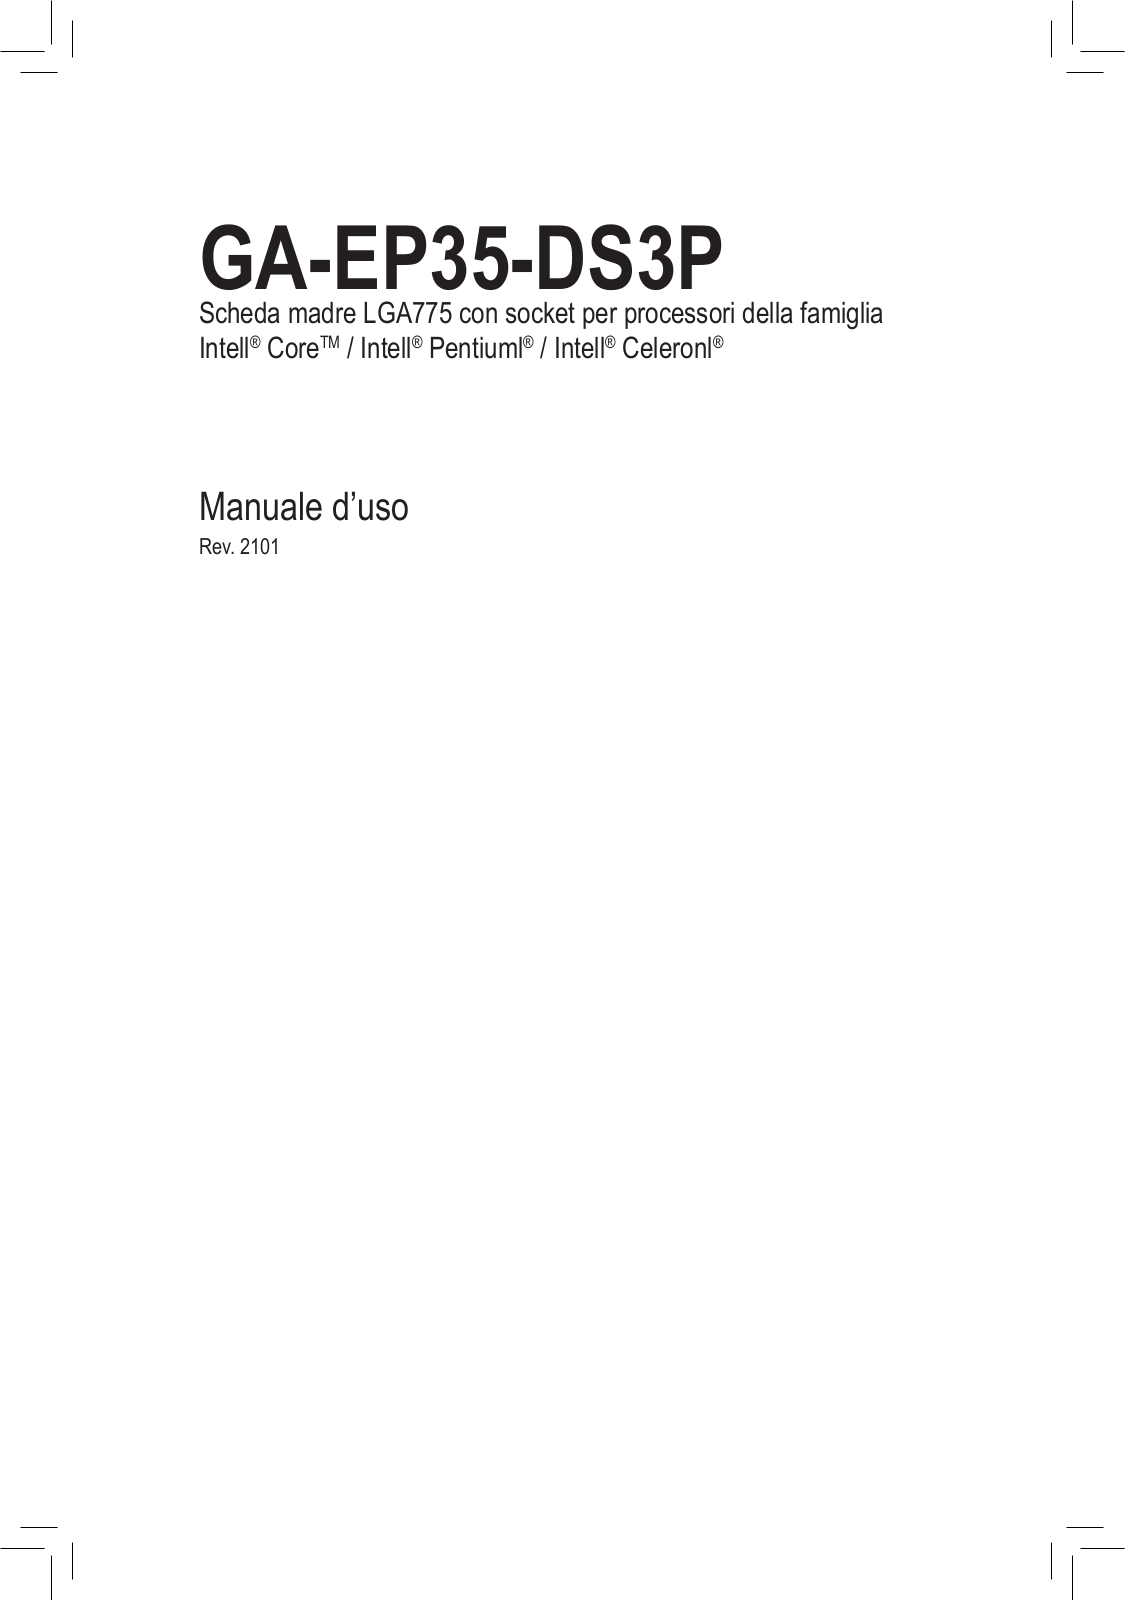 Gigabyte GA-EP35-DS3P User Manual